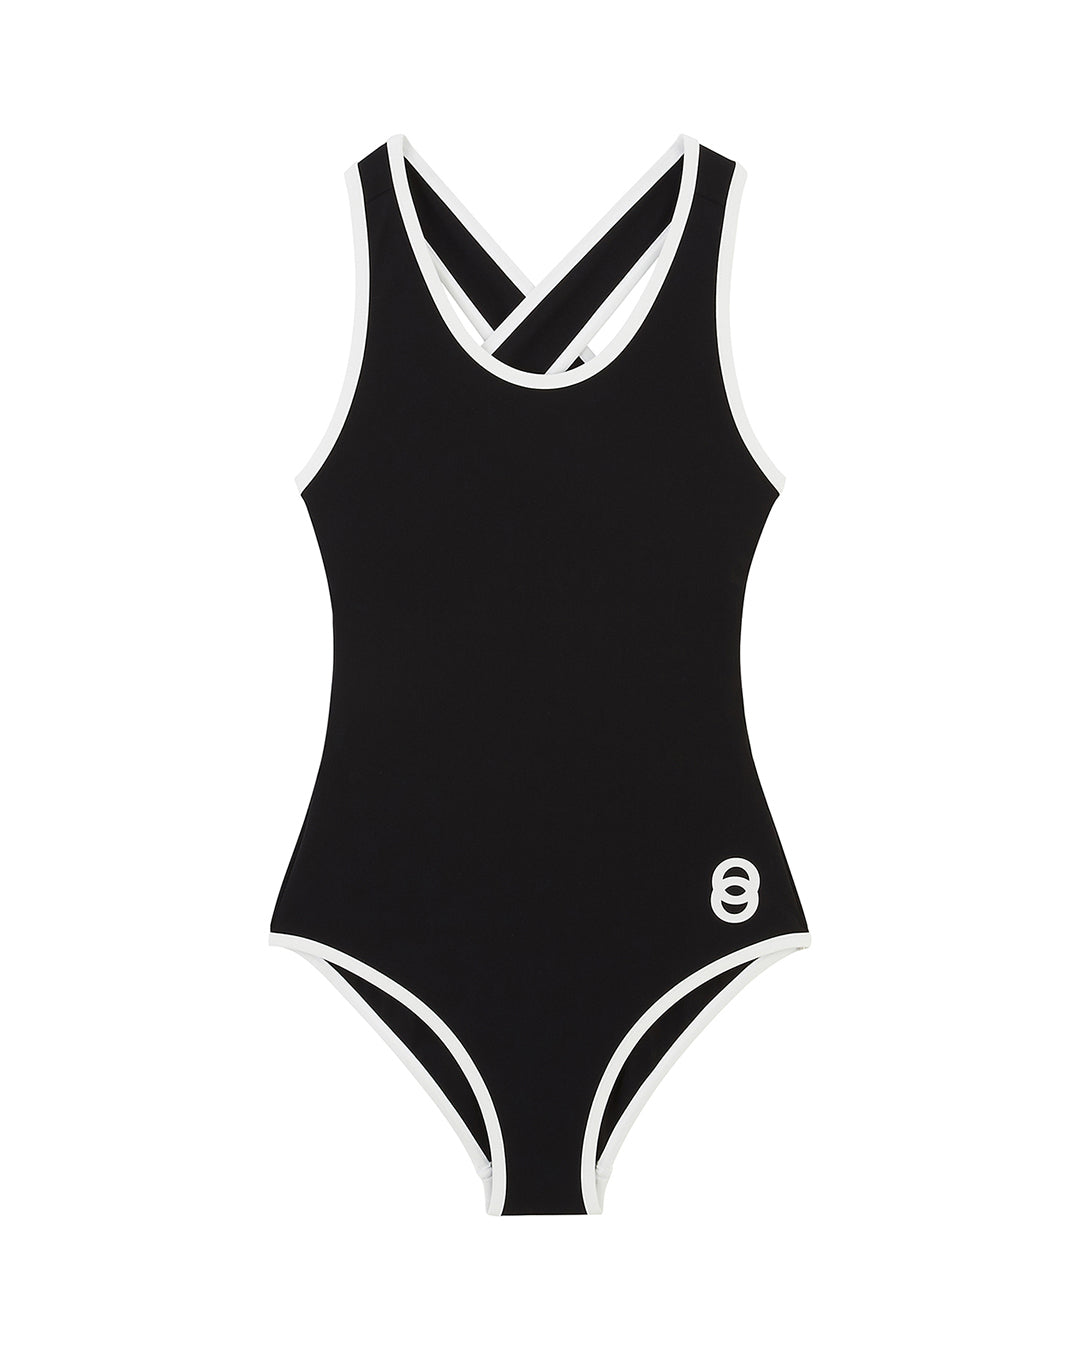 Chlore Swimwear - OLYMPIC Maillot de Bain Une-pièce nageur - Noir